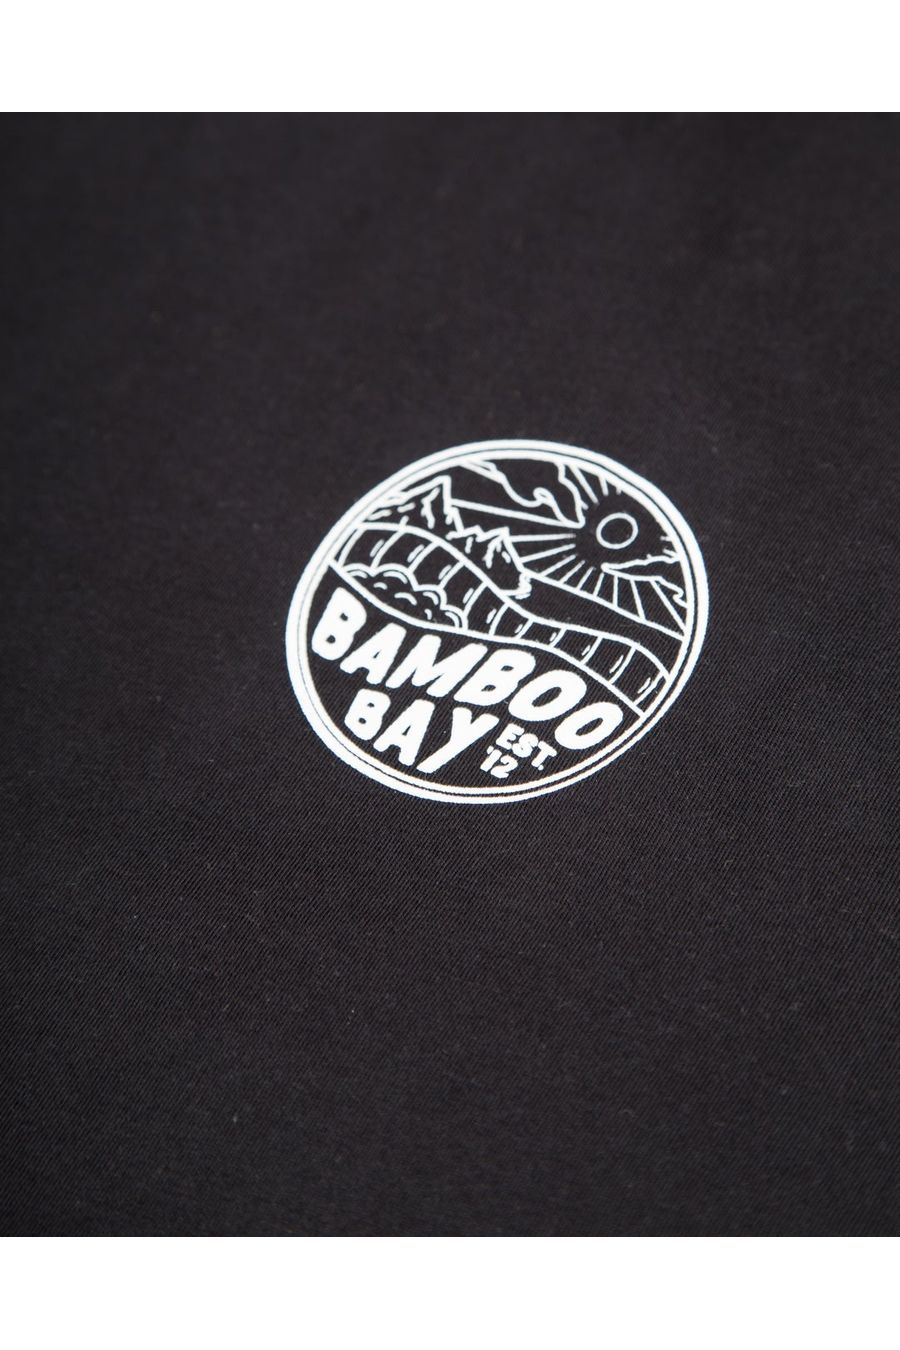 BamBooBay MNT Badge T-Shirt Black